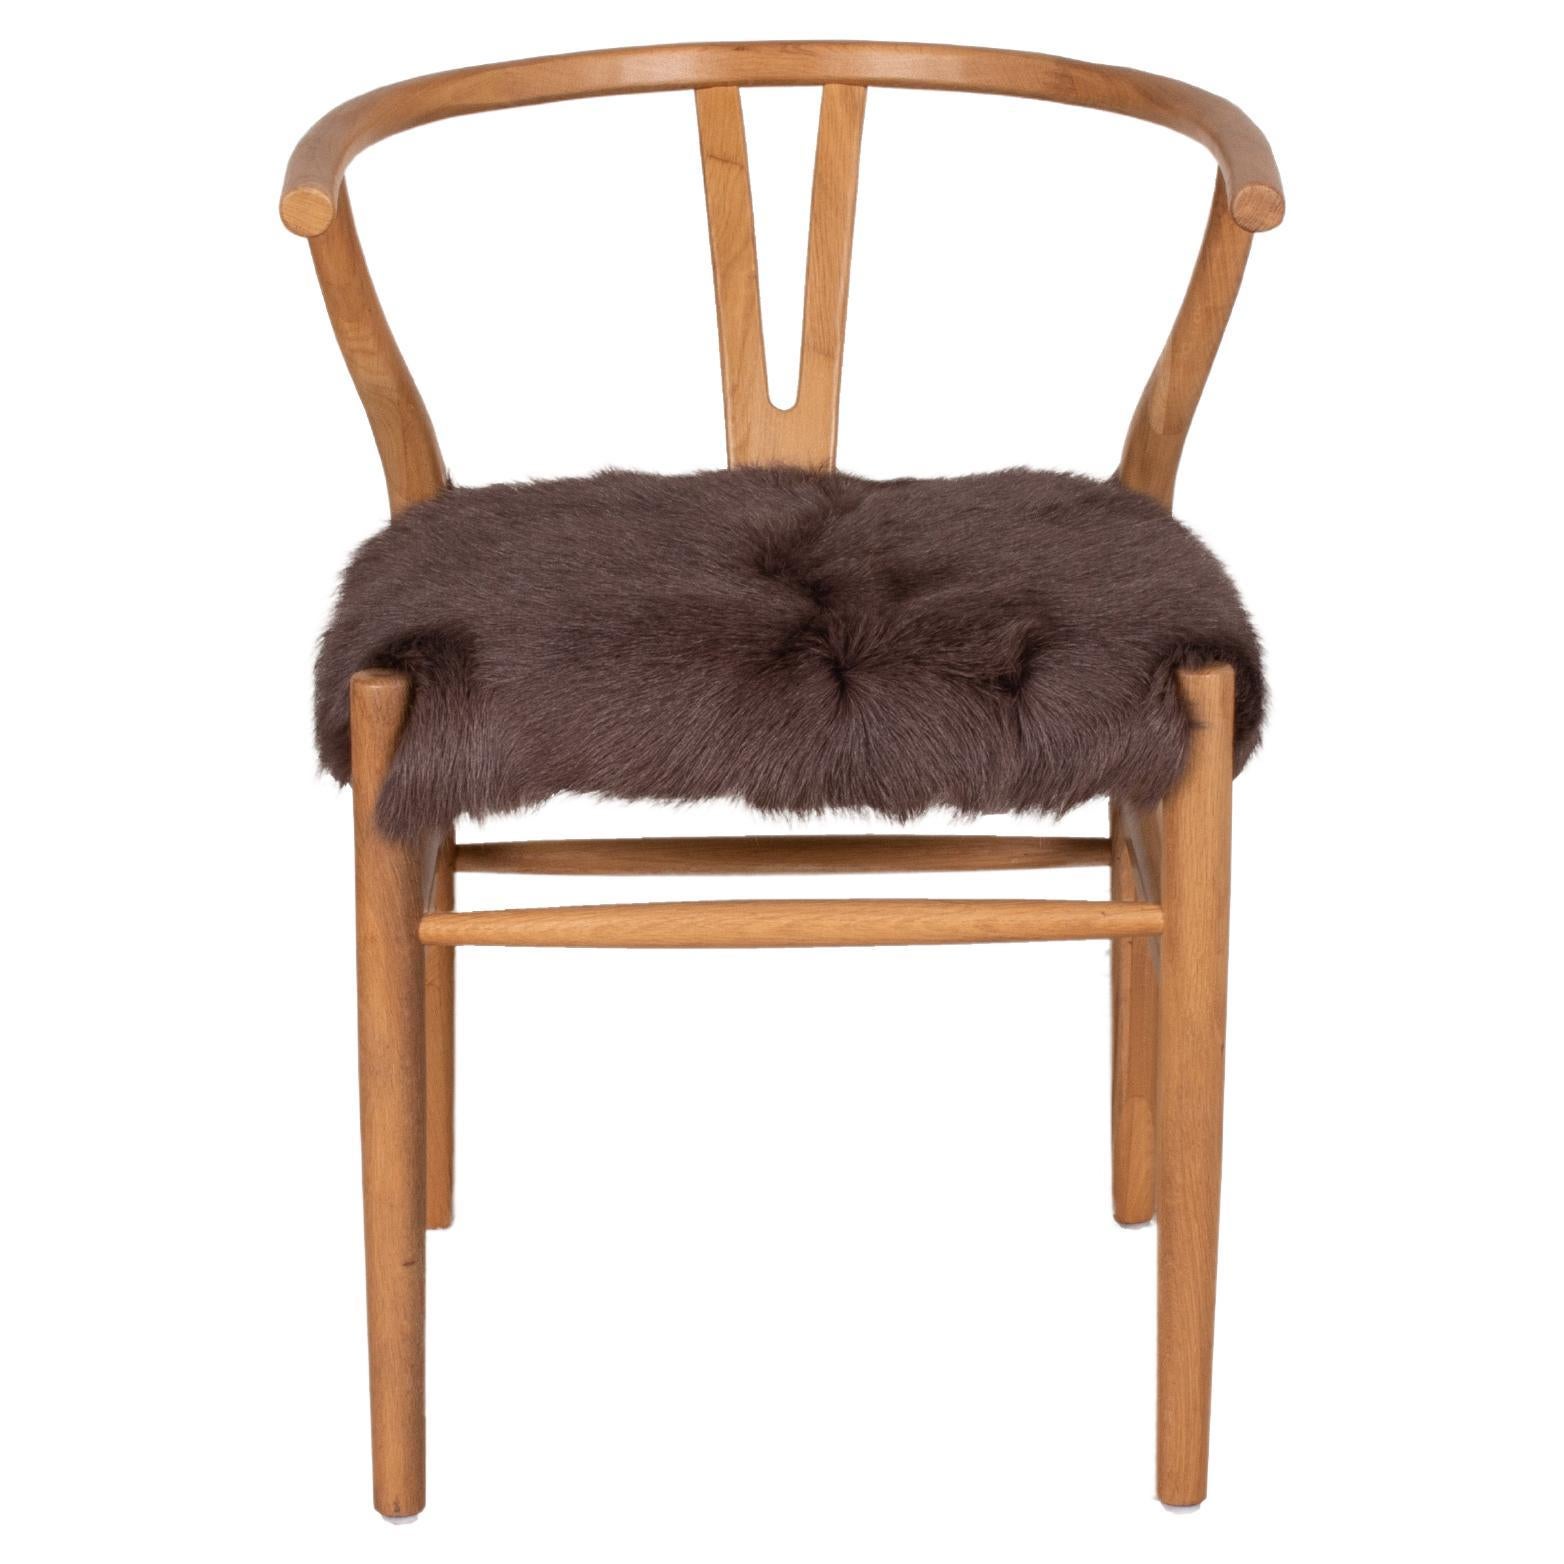 Sessel aus gebogenem Holz mit Sitz aus Leder